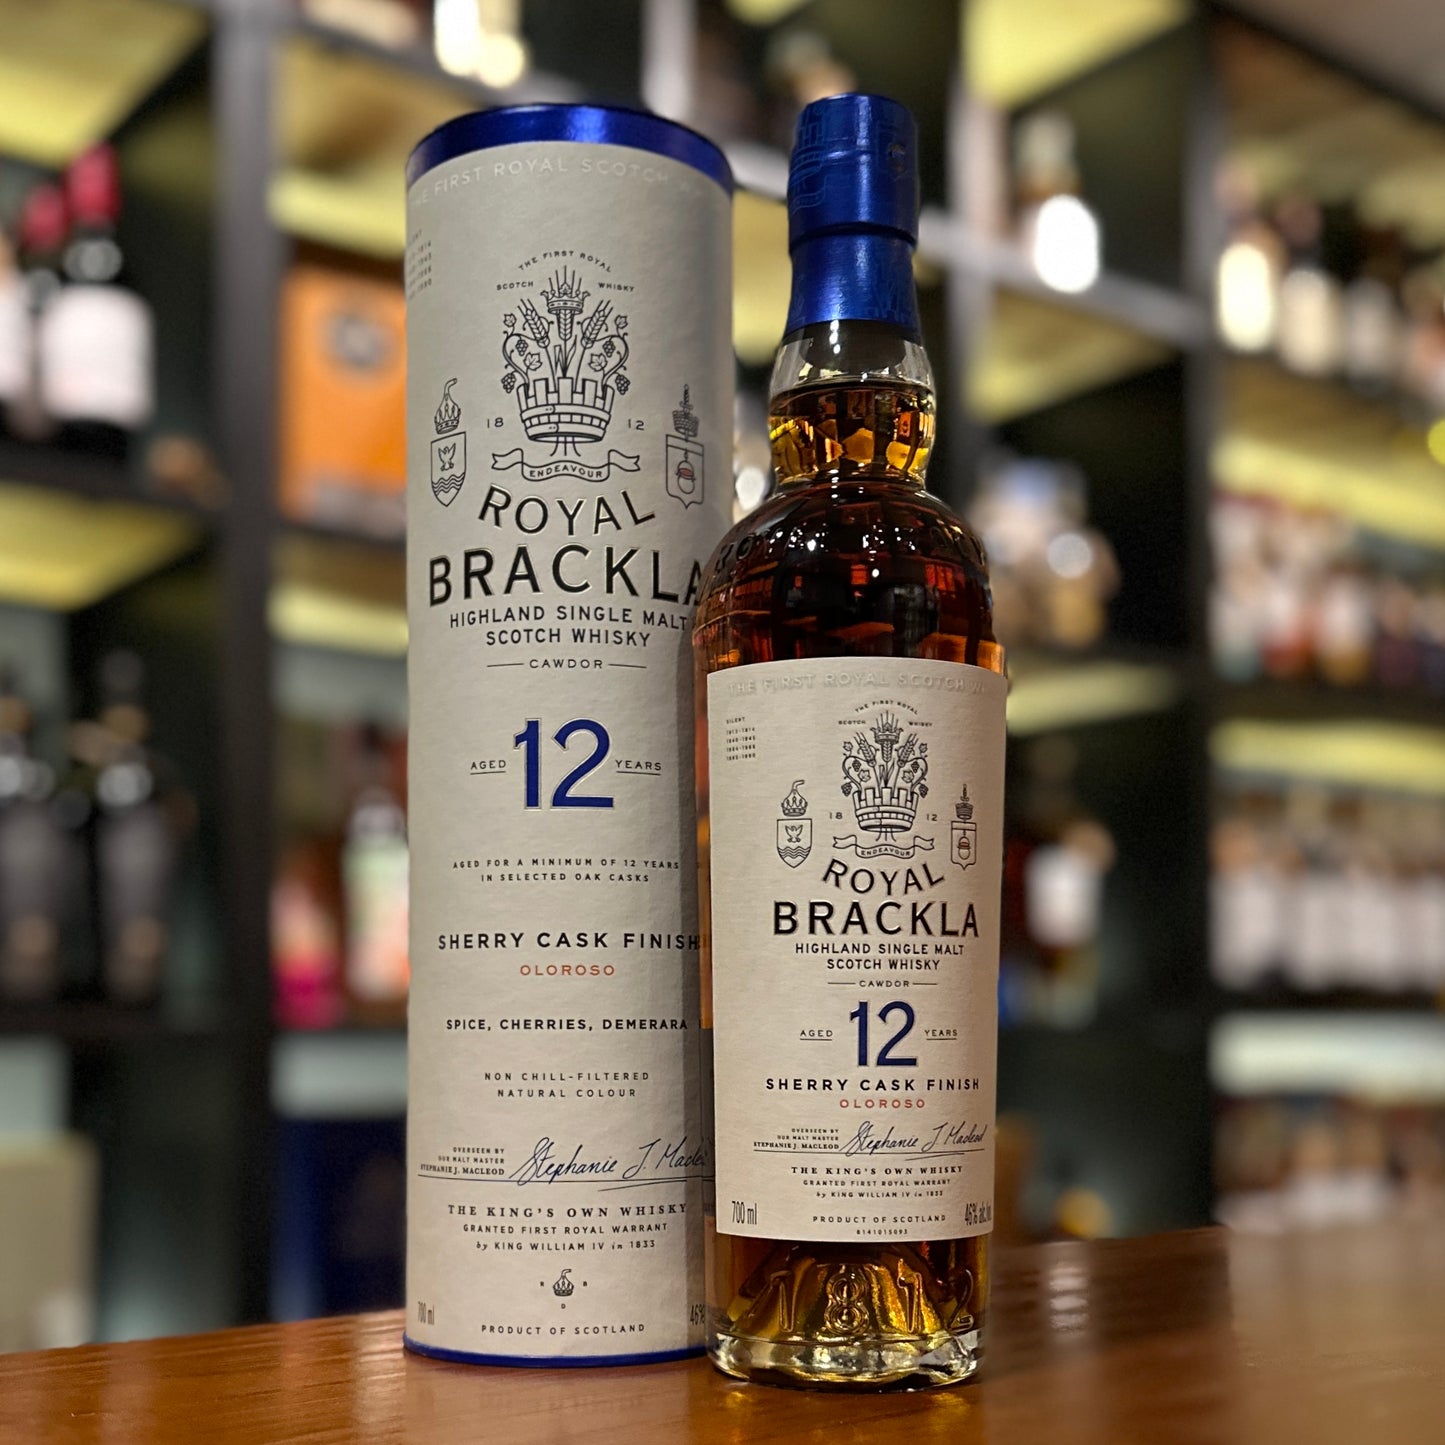 Royal Brackla 12 Year Old Oloroso Sherry Cask Finish Single Malt Scotch Whisky